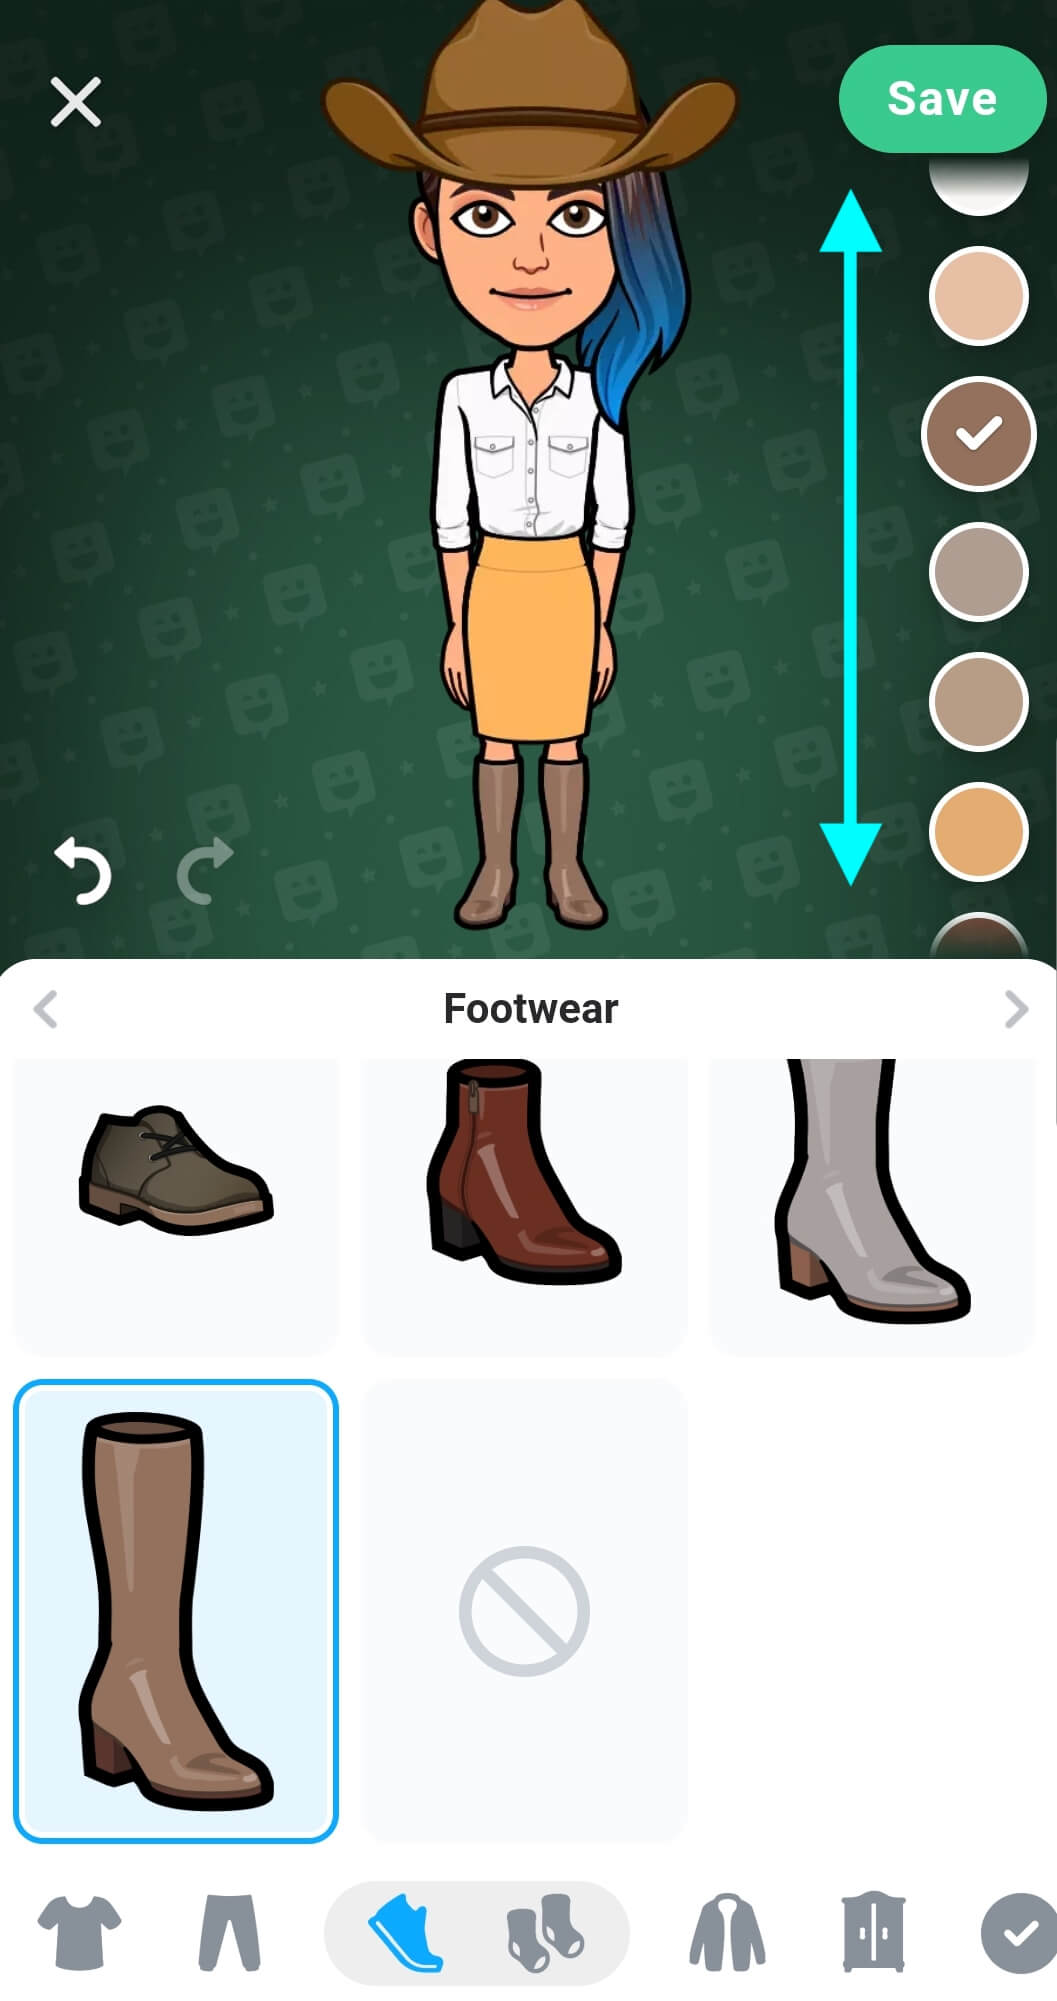 ترتدي الصورة الرمزية الآن حذاء بوت، تحتوي لوحة الألوان الموجودة على اليمين على أسهم تشير إلى التمرير لأعلى أو لأسفل لمزيد من خيارات الألوان.